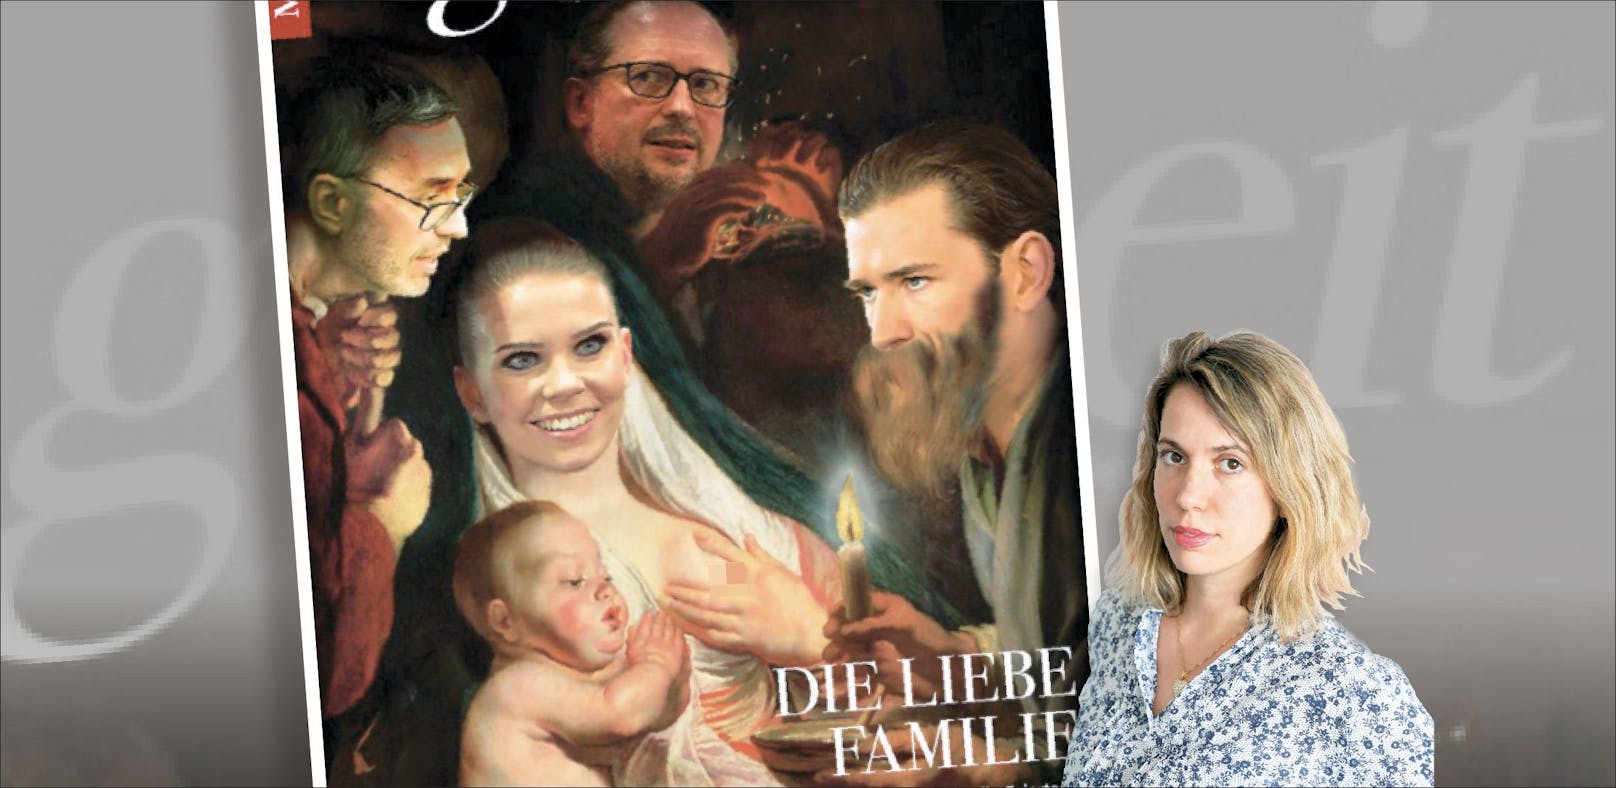 Oh Himmel! Das neue Cover der "Best of Böse"-Satire-Beilage des "Falter" zeigt Susanne Thier barbusig.